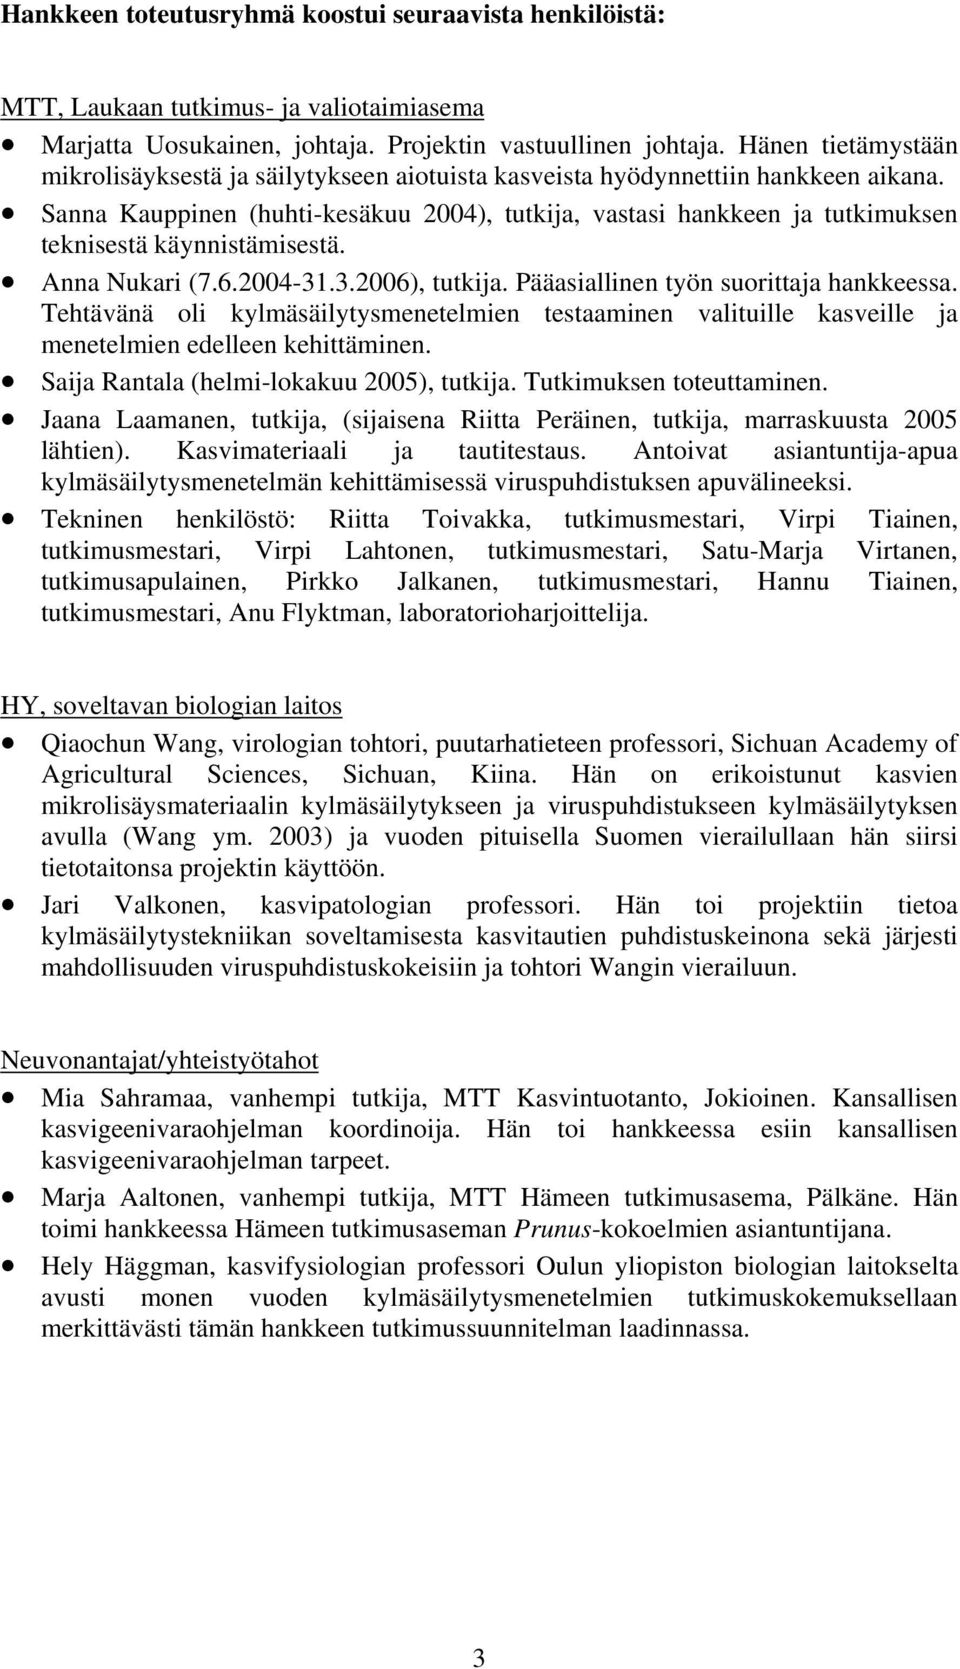 Sanna Kauppinen (huhti-kesäkuu 2004), tutkija, vastasi hankkeen ja tutkimuksen teknisestä käynnistämisestä. Anna Nukari (7.6.2004-31.3.2006), tutkija. Pääasiallinen työn suorittaja hankkeessa.